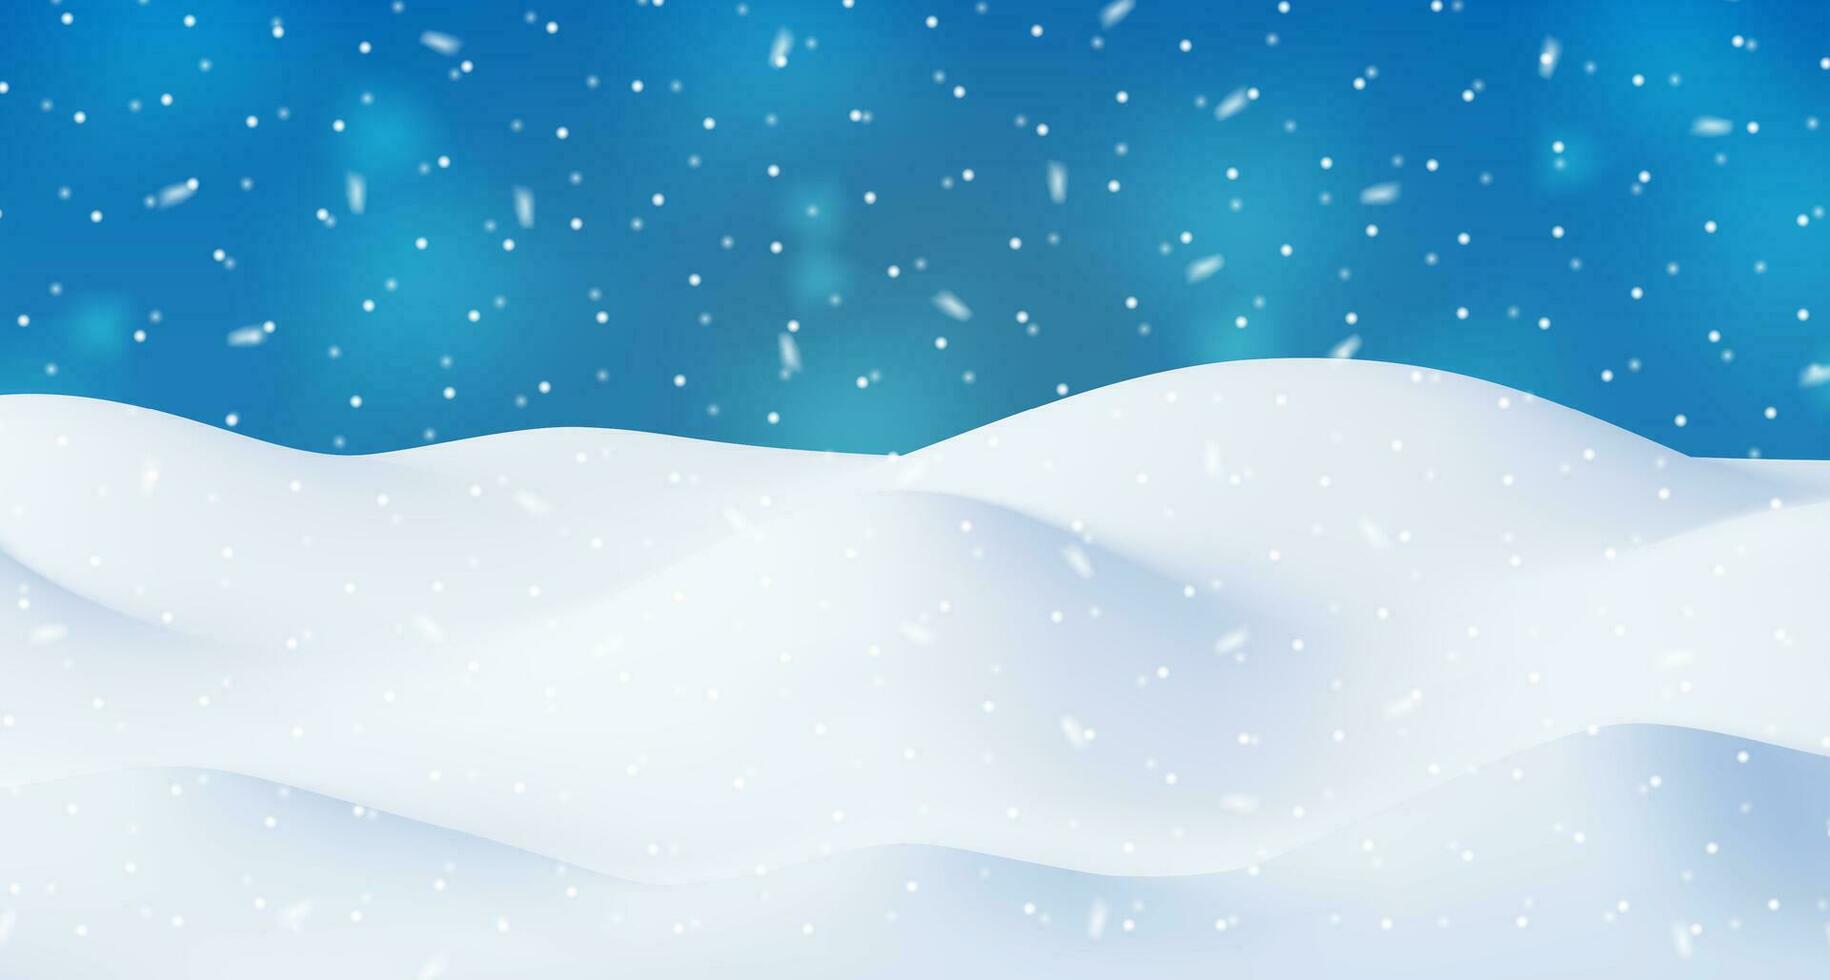 3d vinter- landskap med snödrivor och snö. framställa jul snö driver på blå himmel bakgrund. vinter- snö jord, snödriva hög, is lager. realistisk vektor illustration